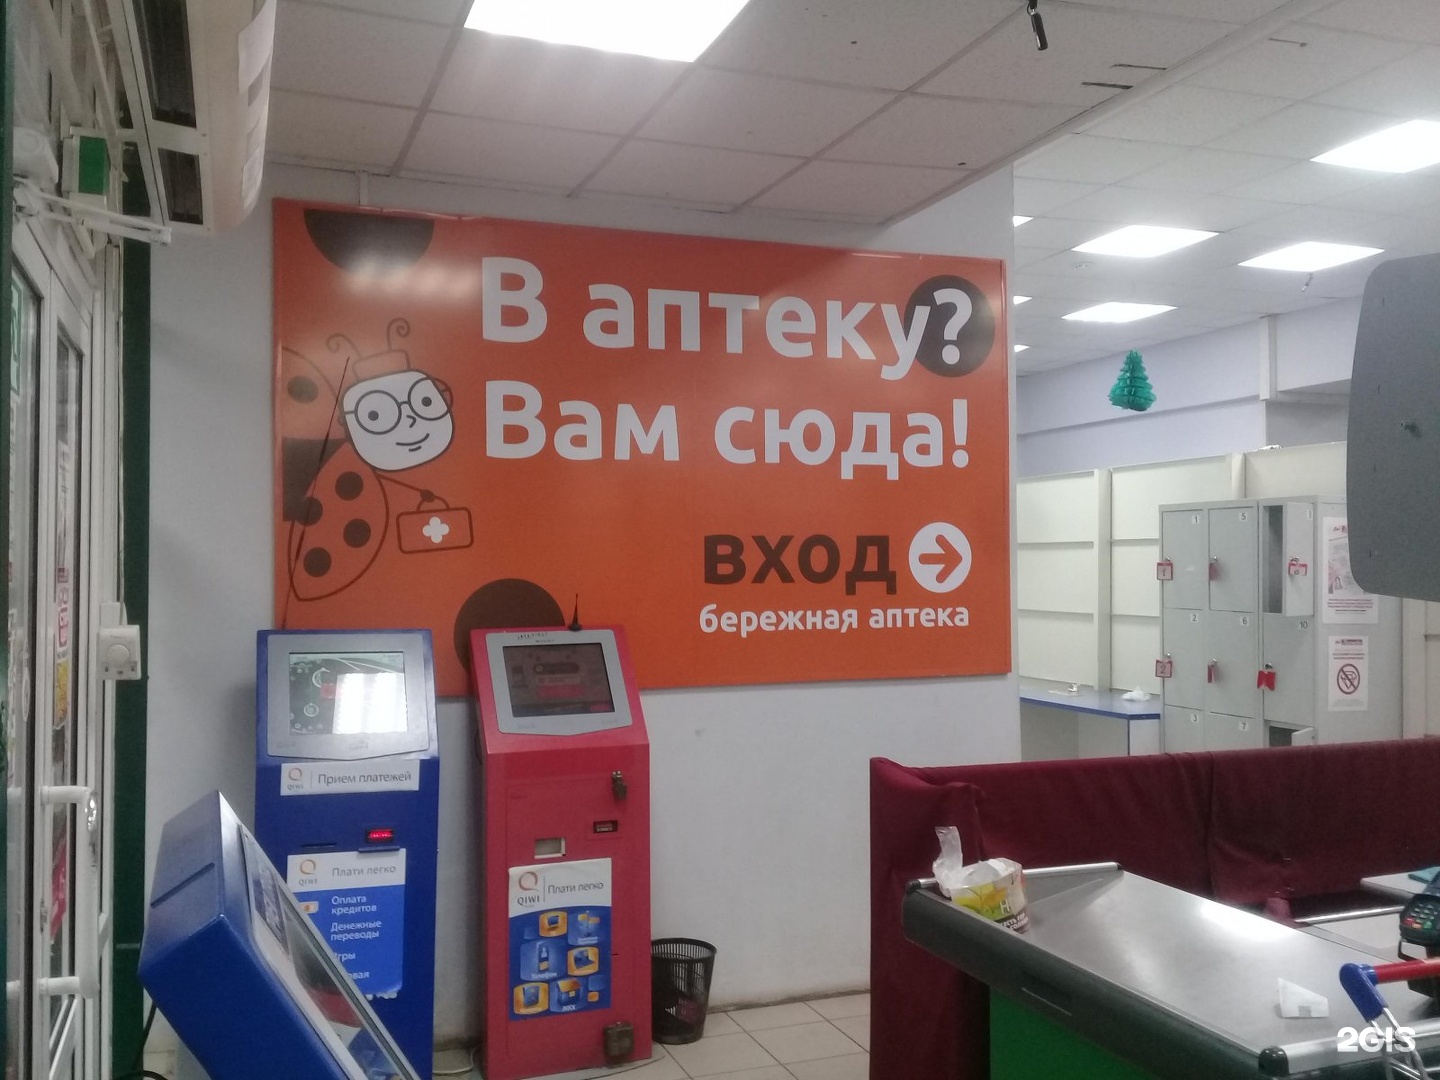 Бережная Аптека Оренбург Победы